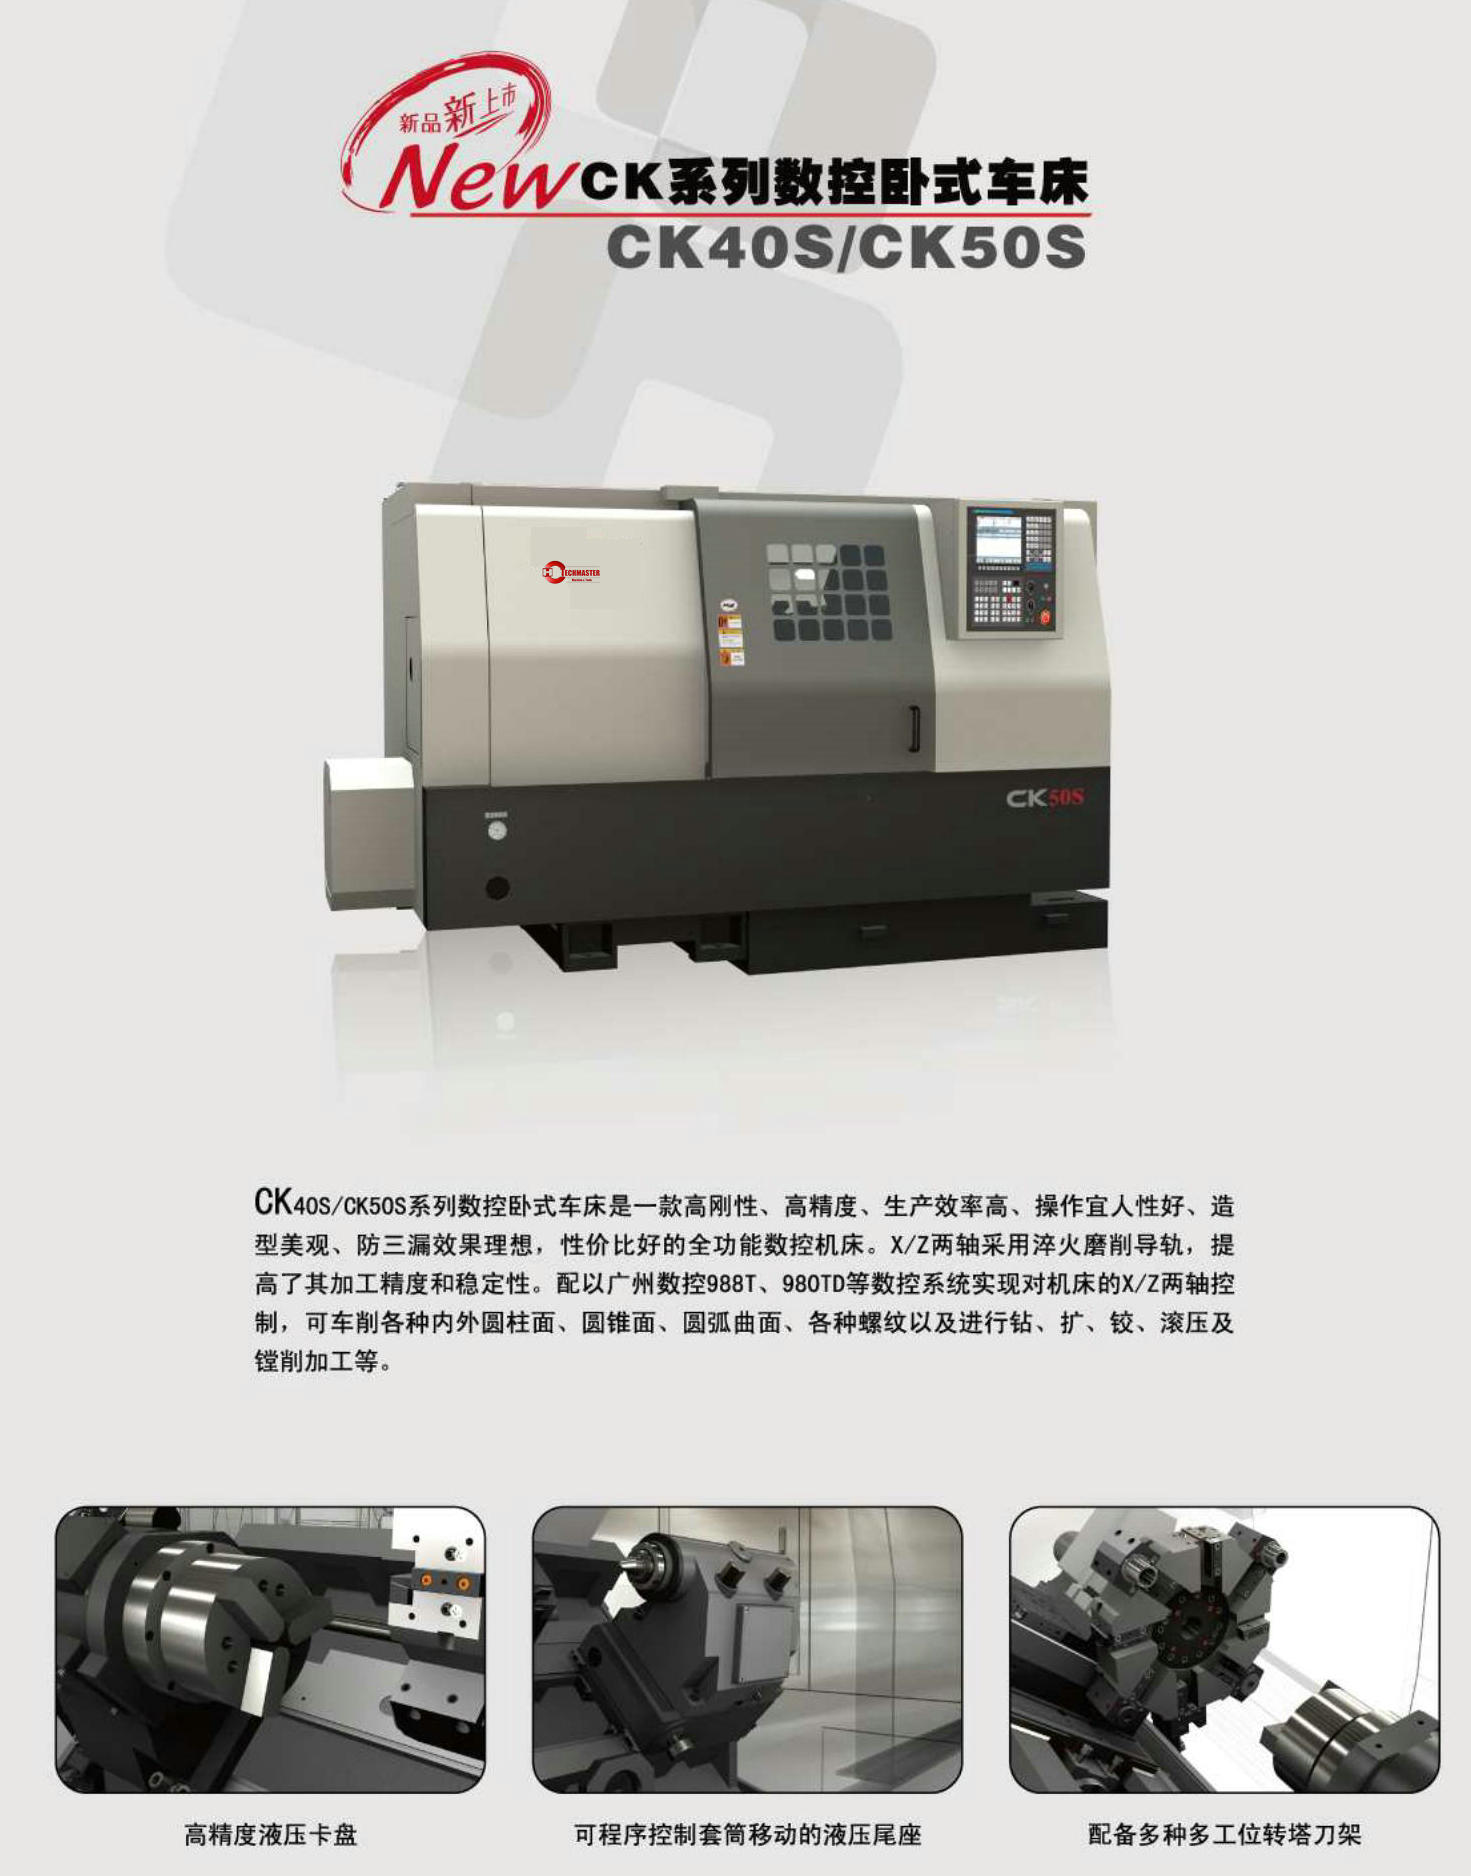 CK SLANT BED PRECISION CNC LATHE CK40S-CK50S